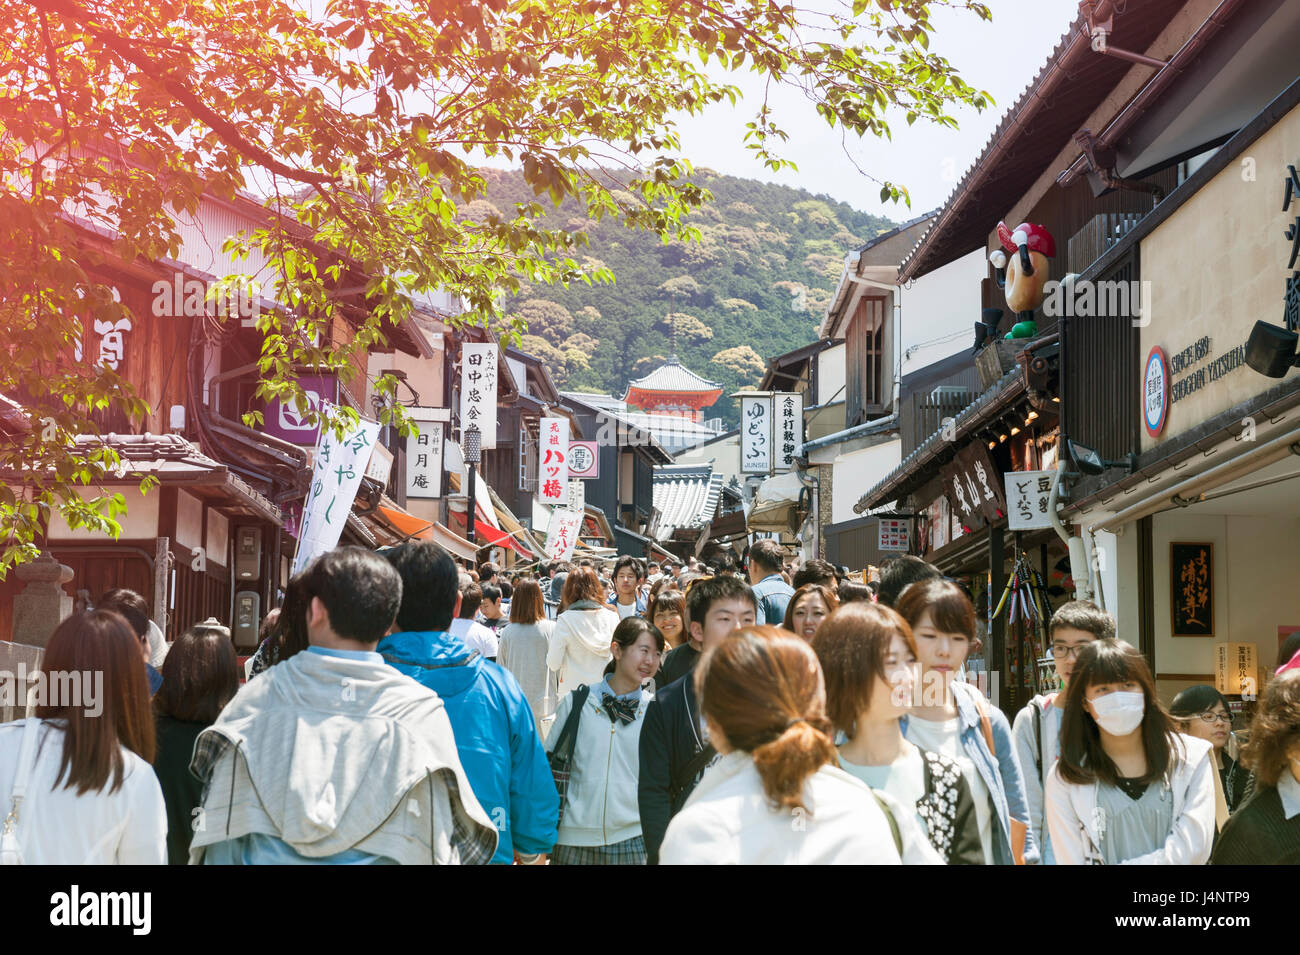 Kyoto, Giappone - Marzo 2016: grande folla di scena a Matsubara Dori, strada famosa per lo shopping, sulla strada per il famoso Kiyomizu-dera tempio di Kyoto, Giappone Foto Stock